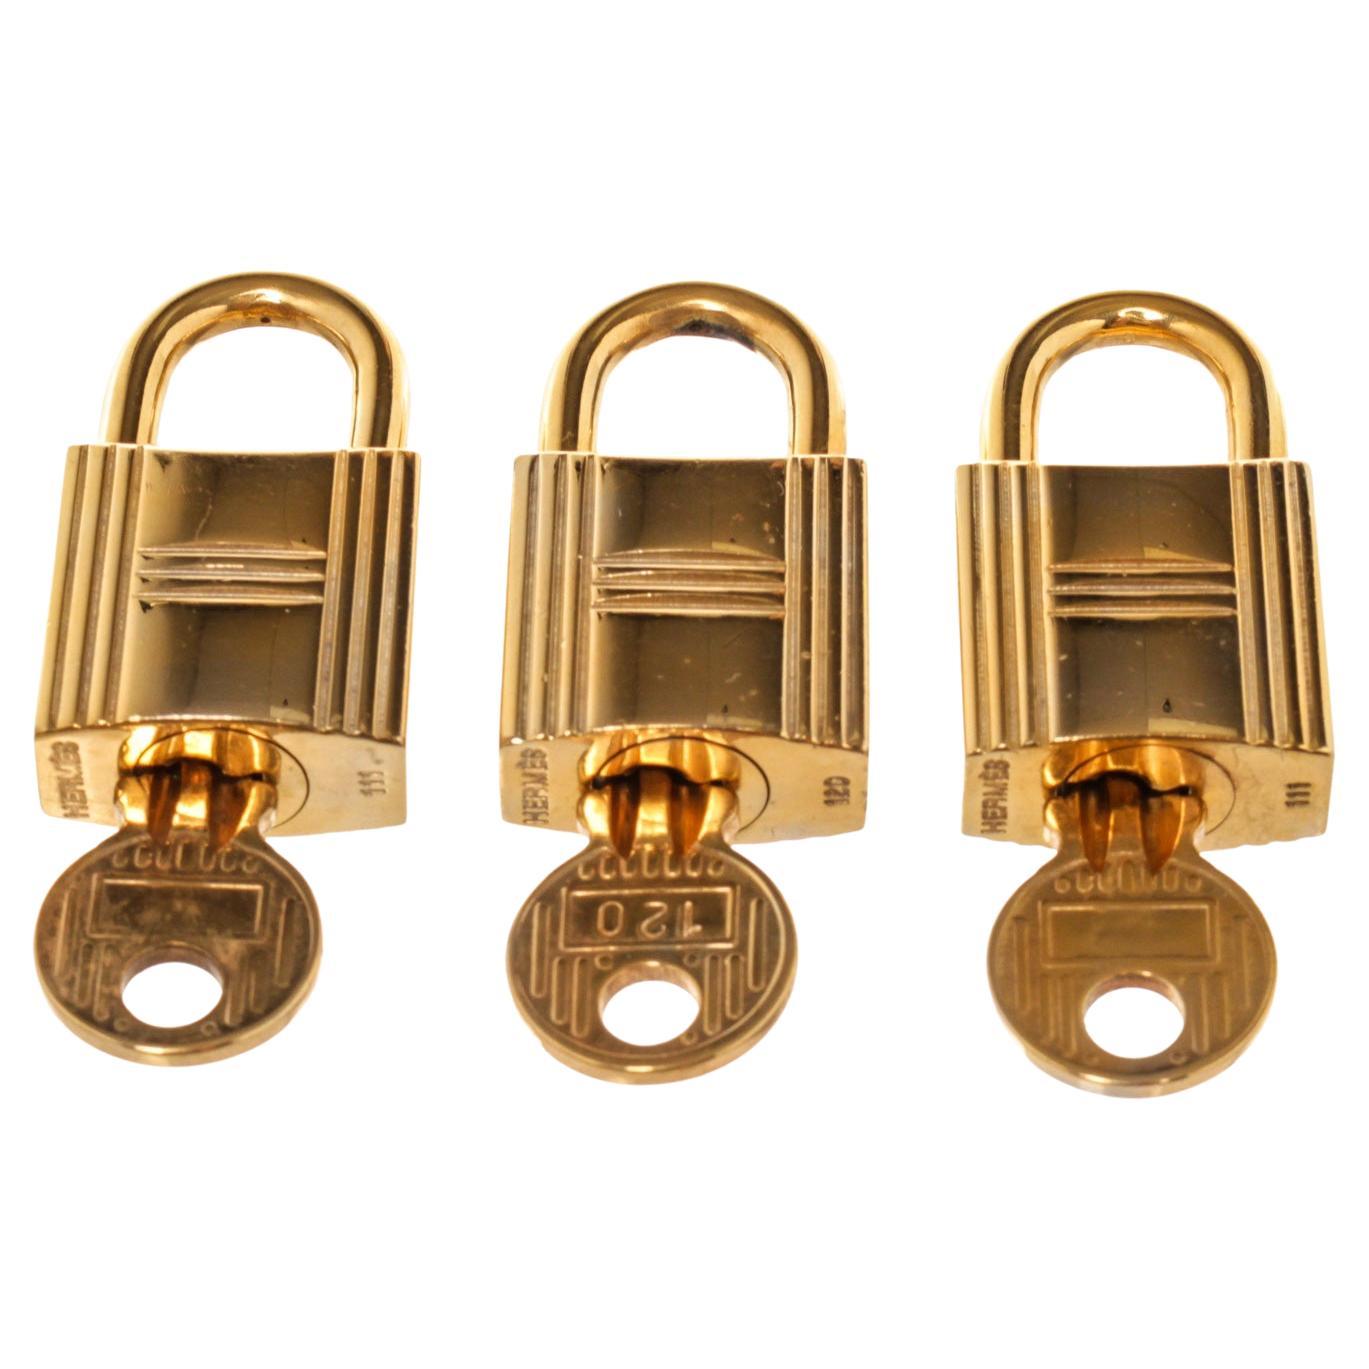 Hermes Gold Cadena Lock Schlüsselanhänger-Set mit Gold-Hartware und gedrehtem Schlossverschluss